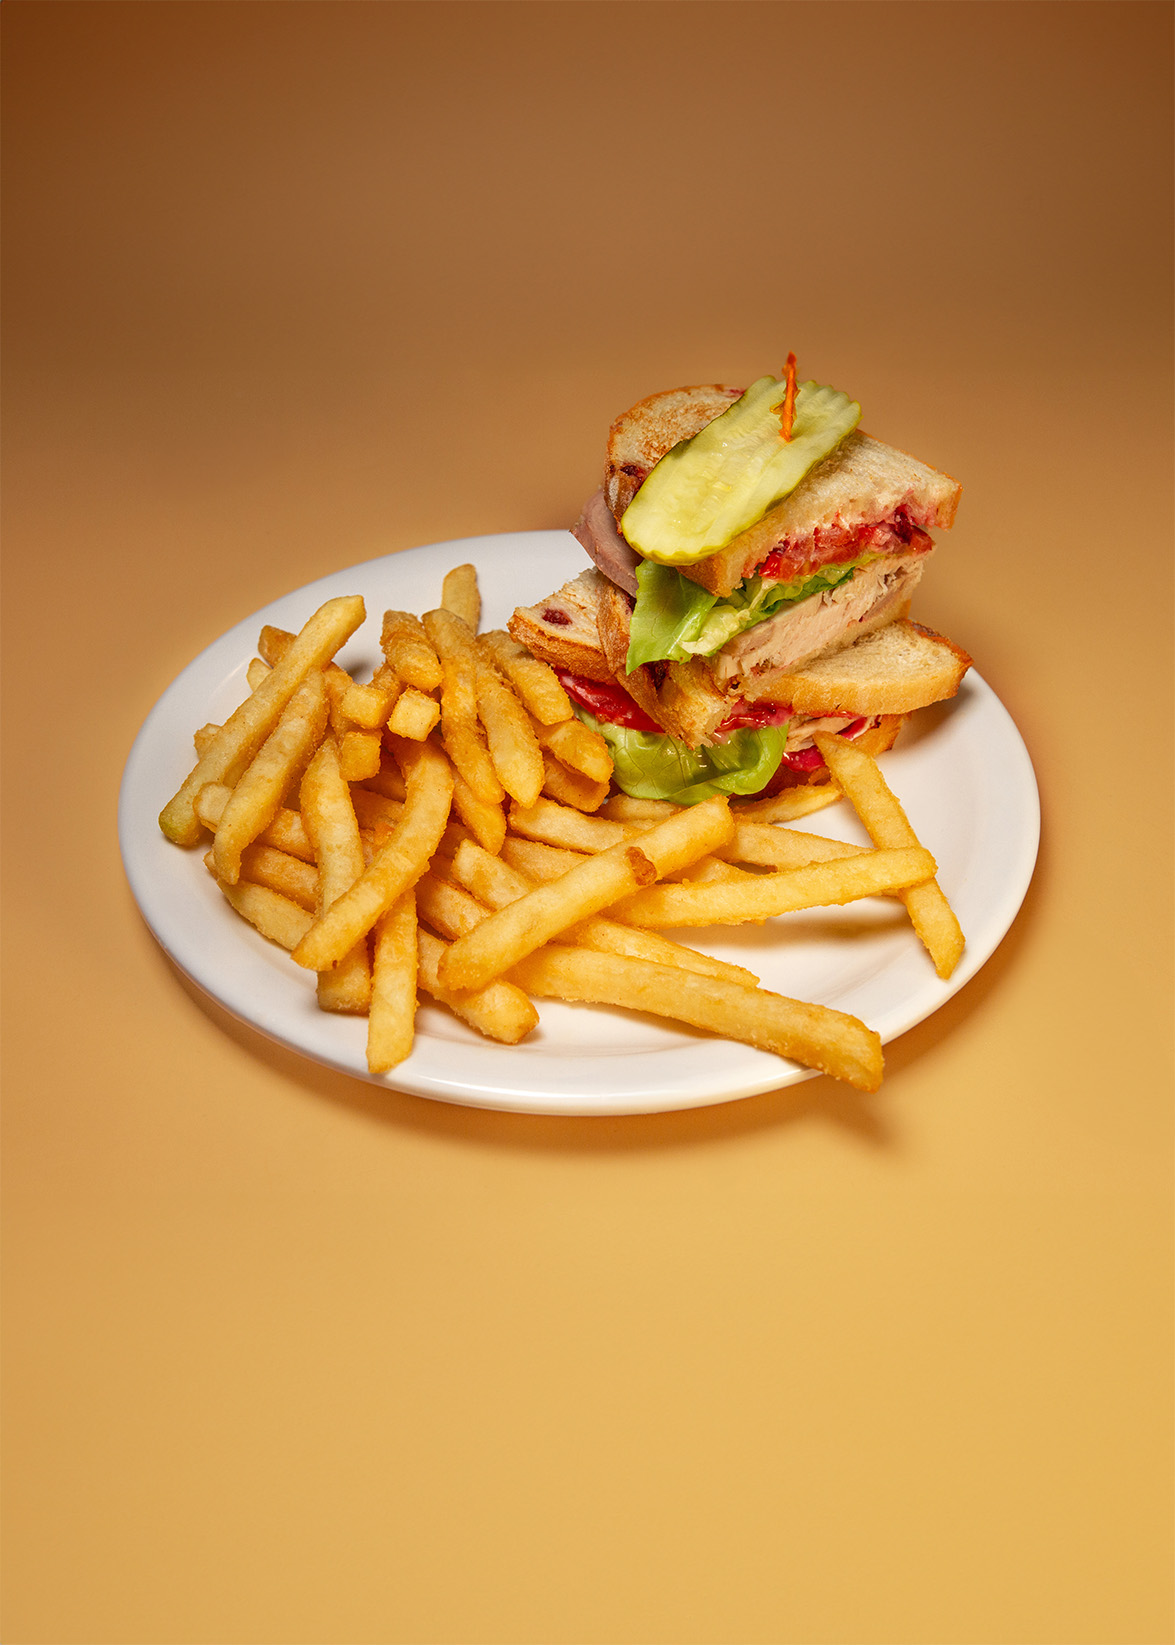 turkey club sandwich with fries